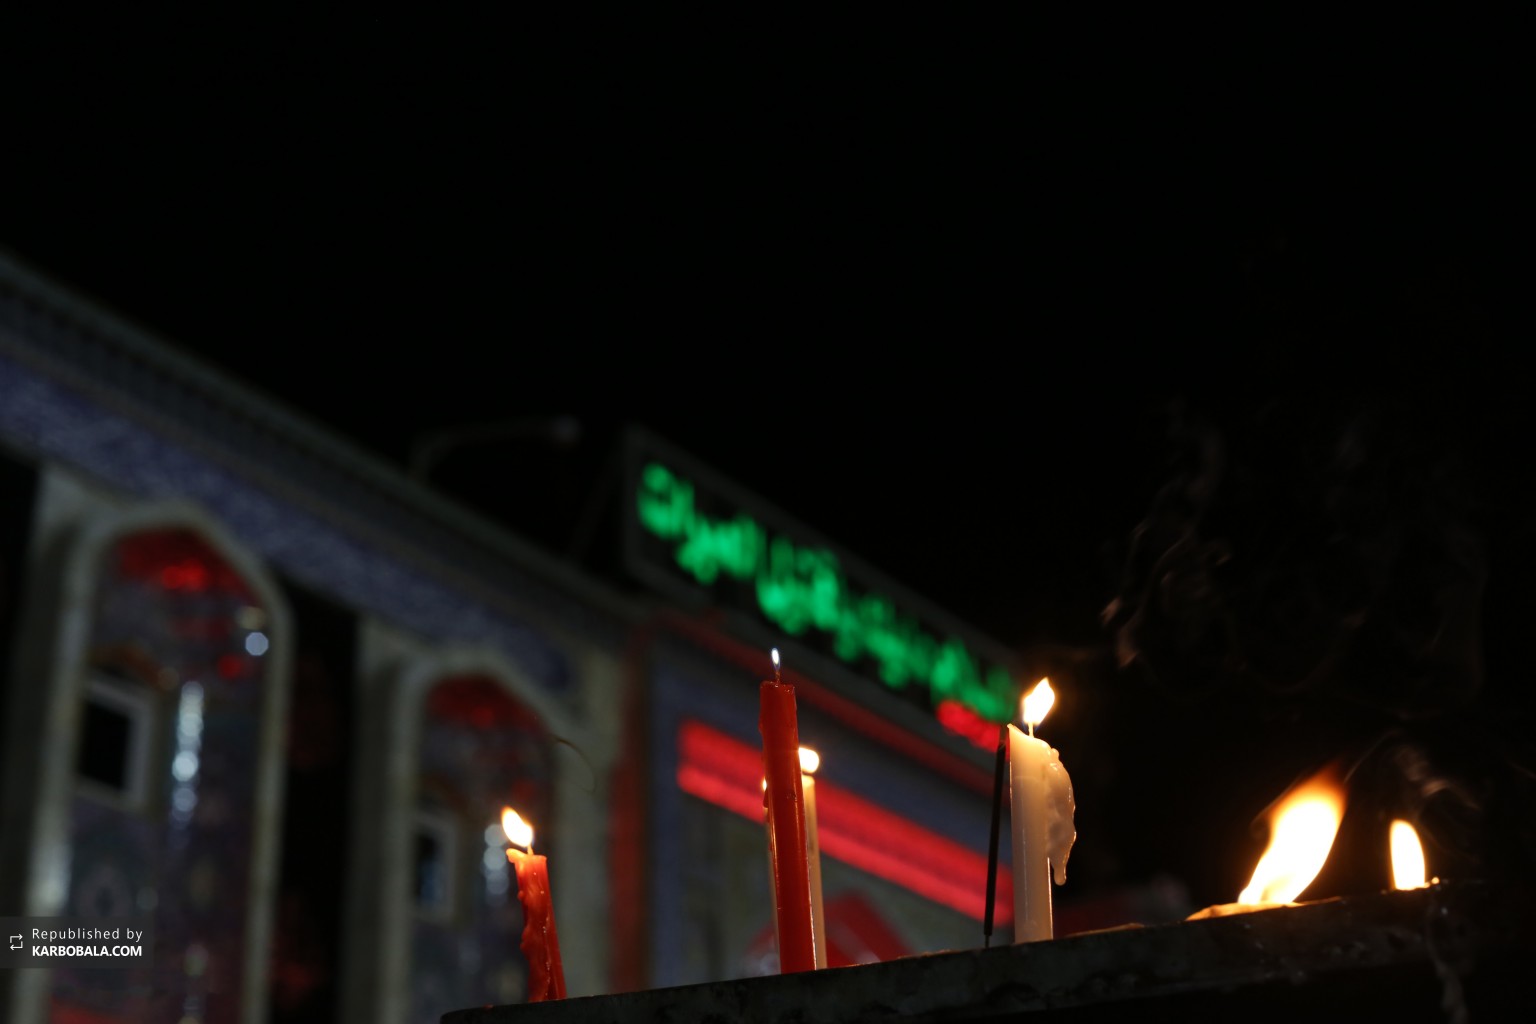 شمع های روشن شده به مناسبت شهادت سیدالشهداء علیه السلام